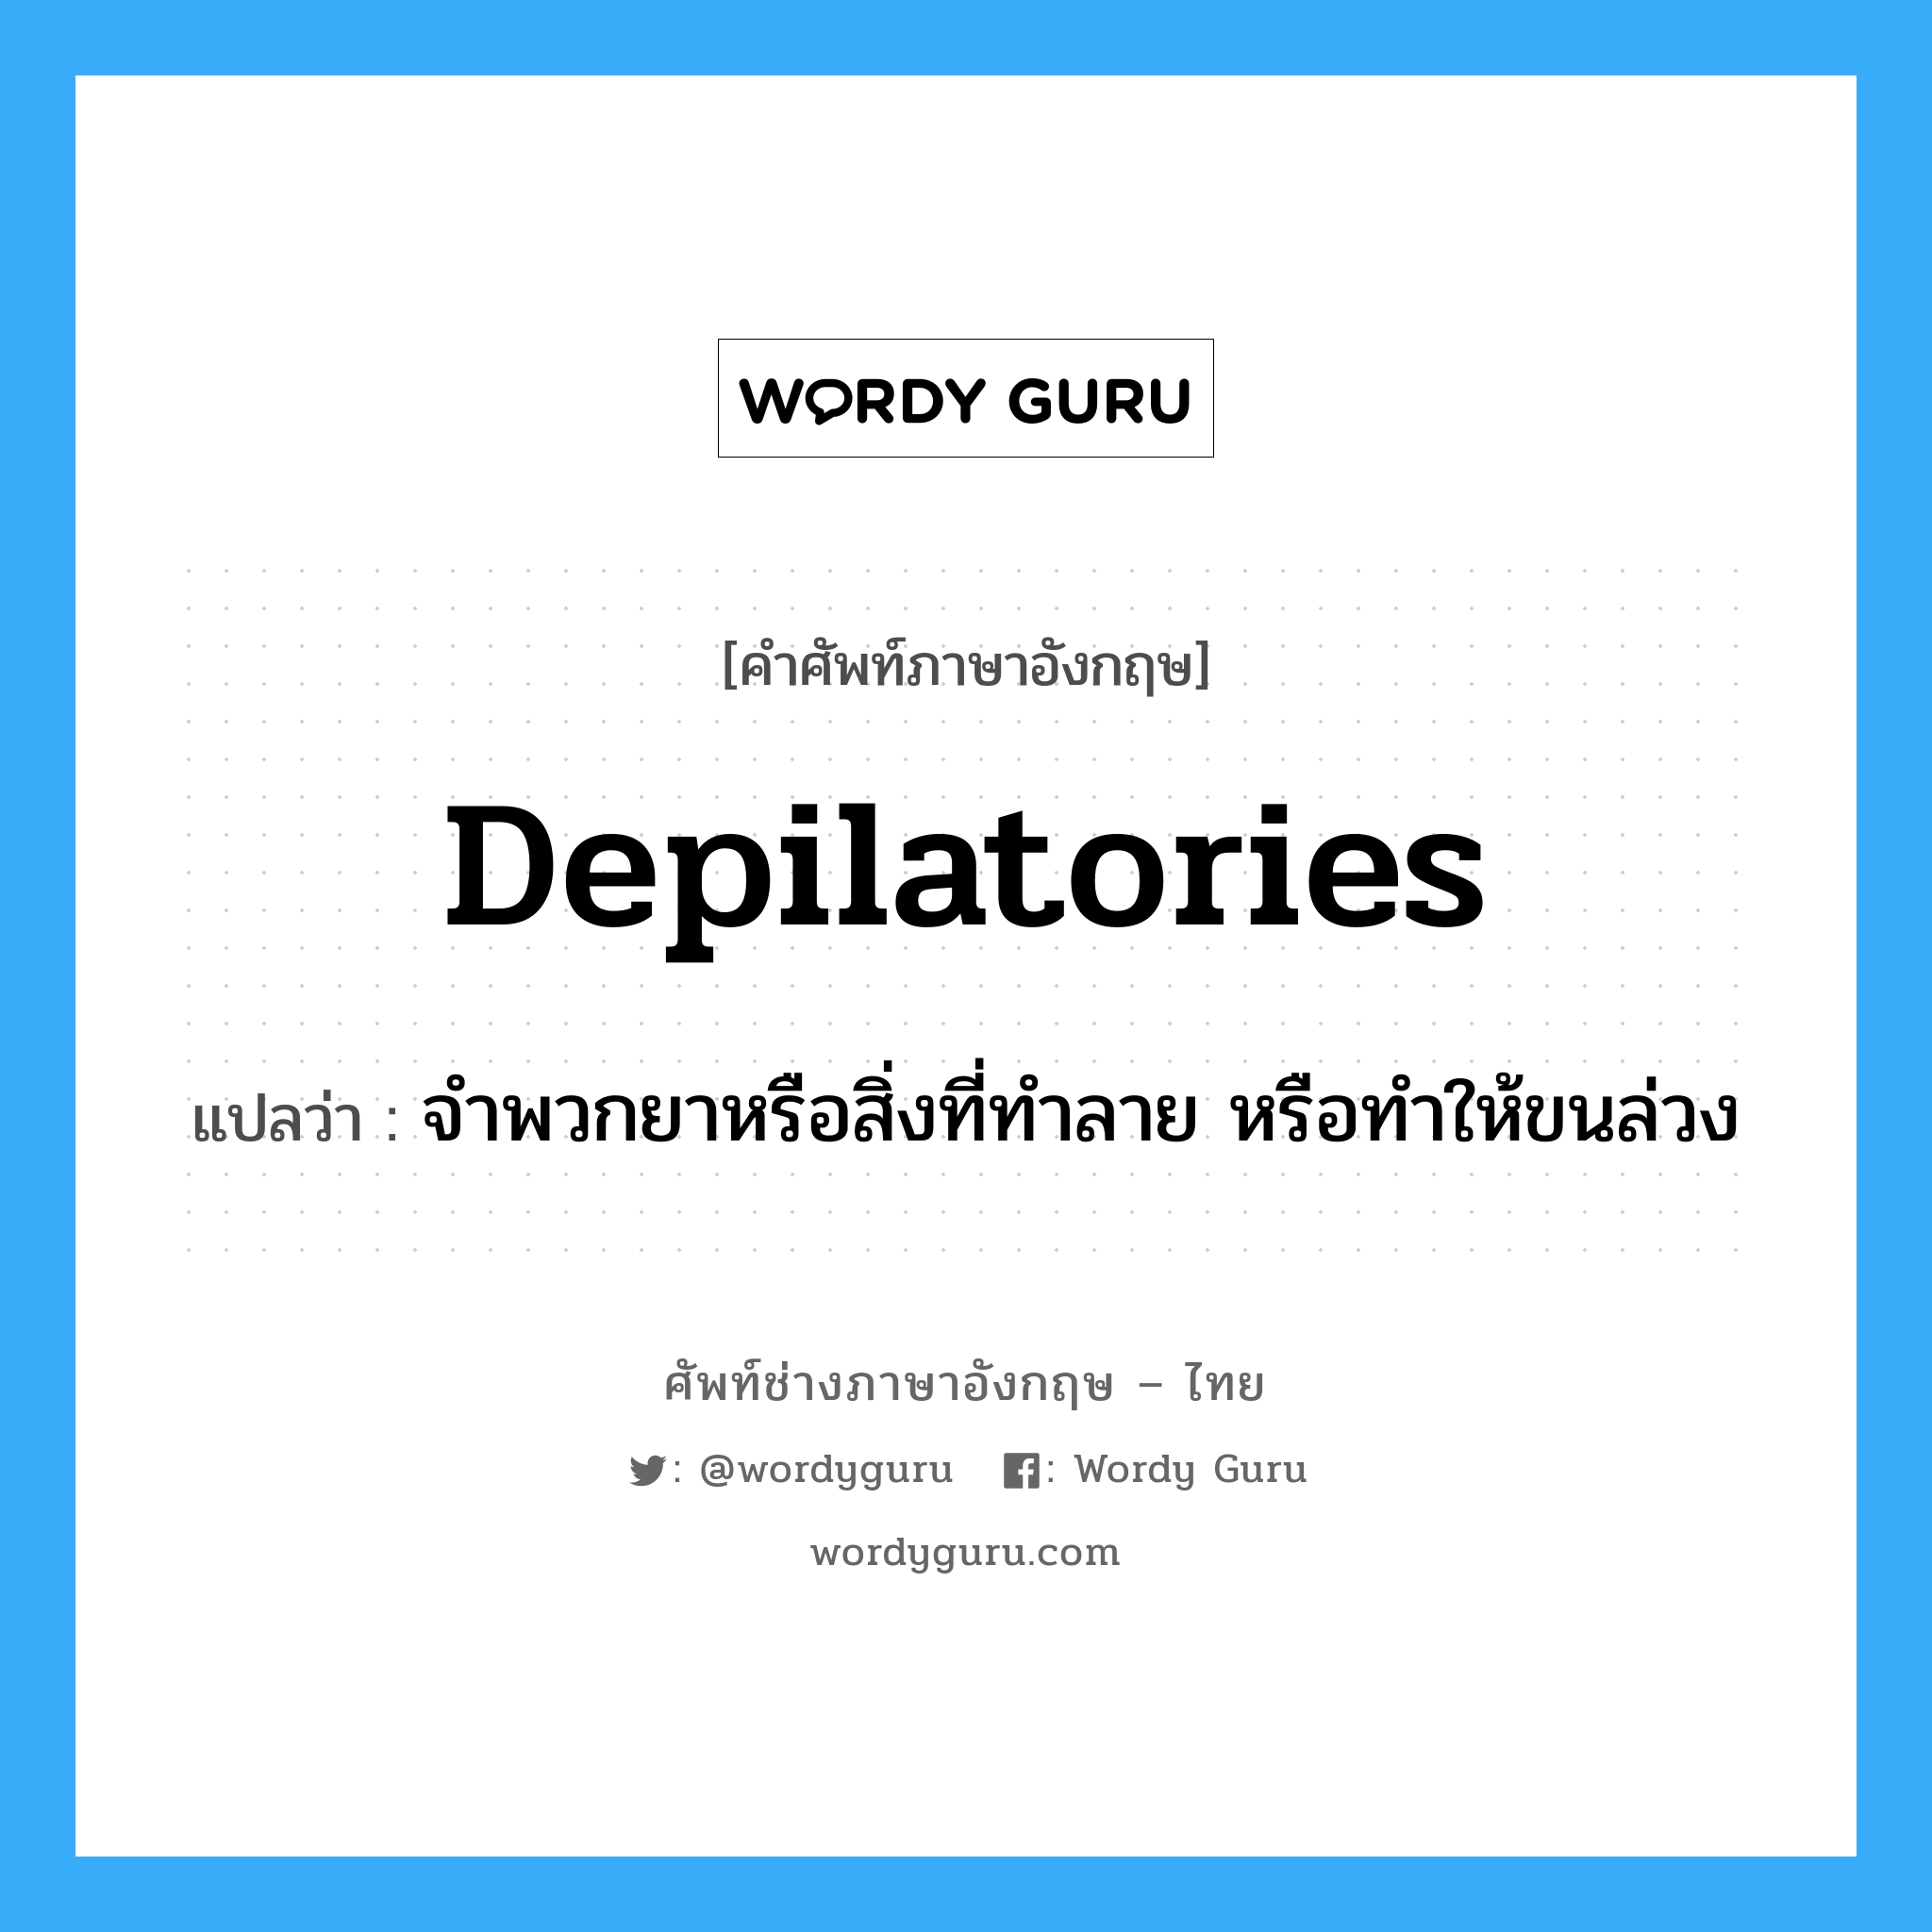 depilatories แปลว่า?, คำศัพท์ช่างภาษาอังกฤษ - ไทย depilatories คำศัพท์ภาษาอังกฤษ depilatories แปลว่า จำพวกยาหรือสิ่งที่ทำลาย หรือทำให้ขนล่วง